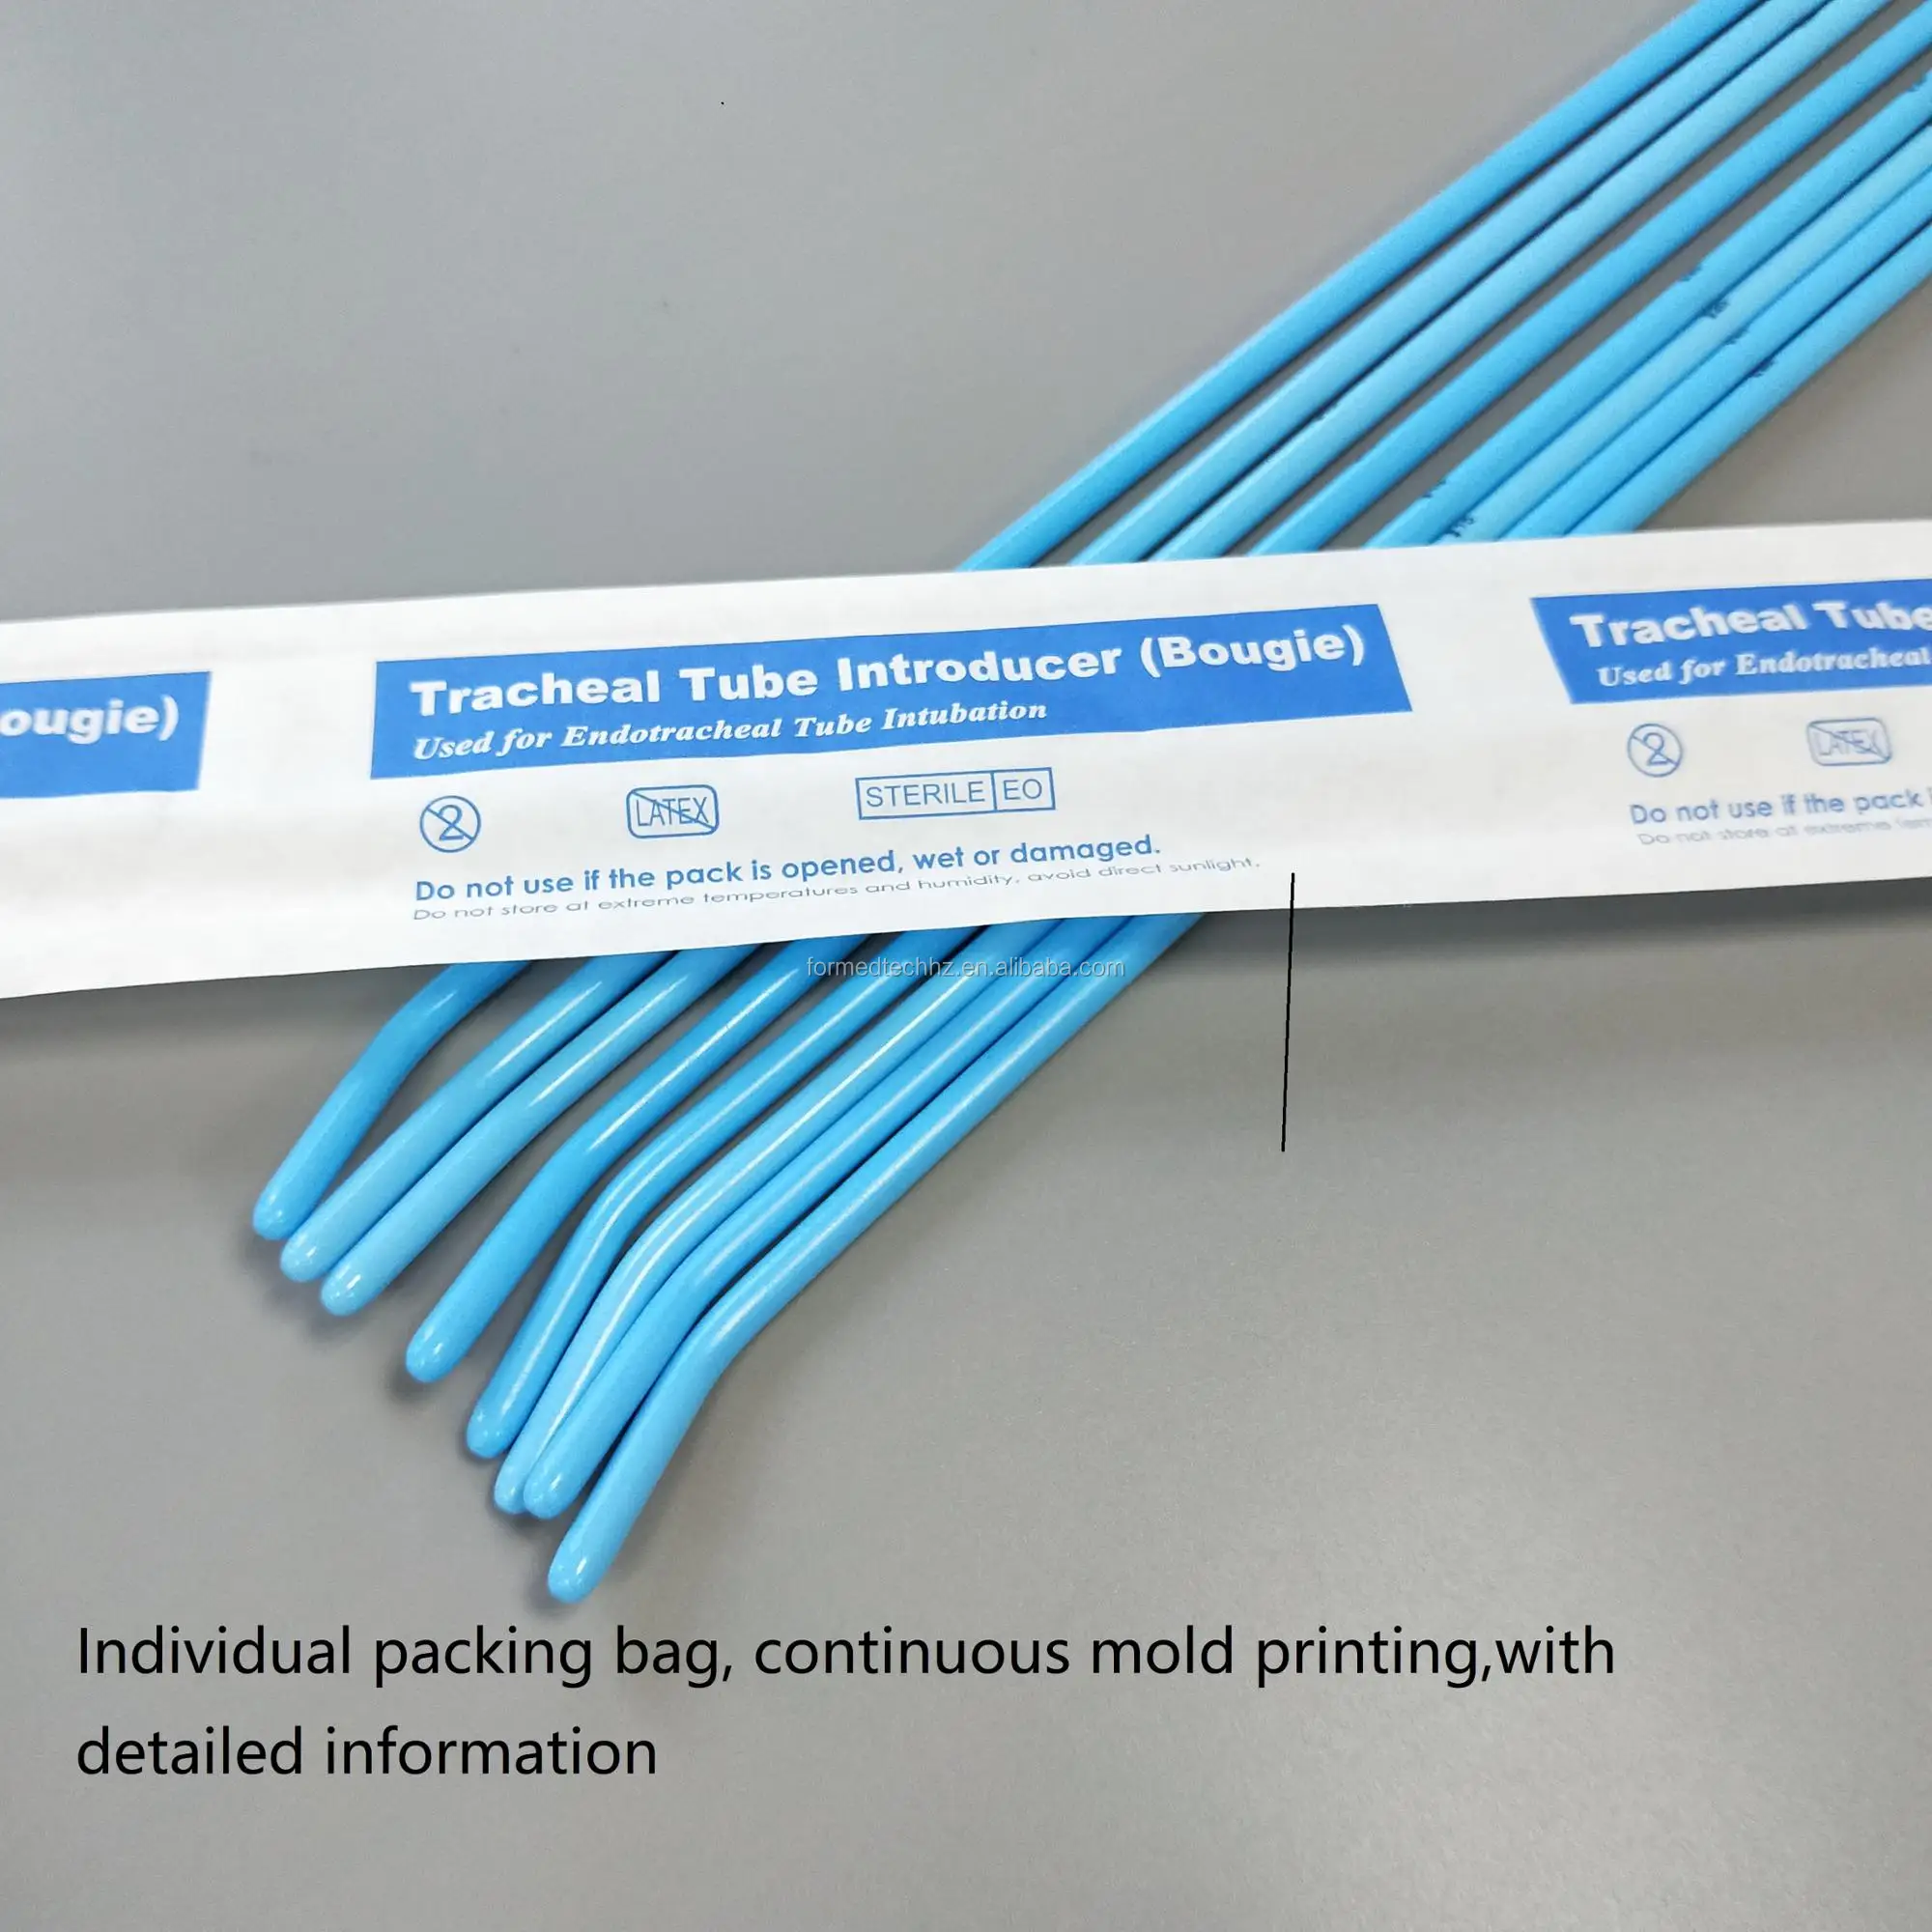 一般医疗供应商 fda 认证的 pe 材料气管导管导入器与弯曲的尖端